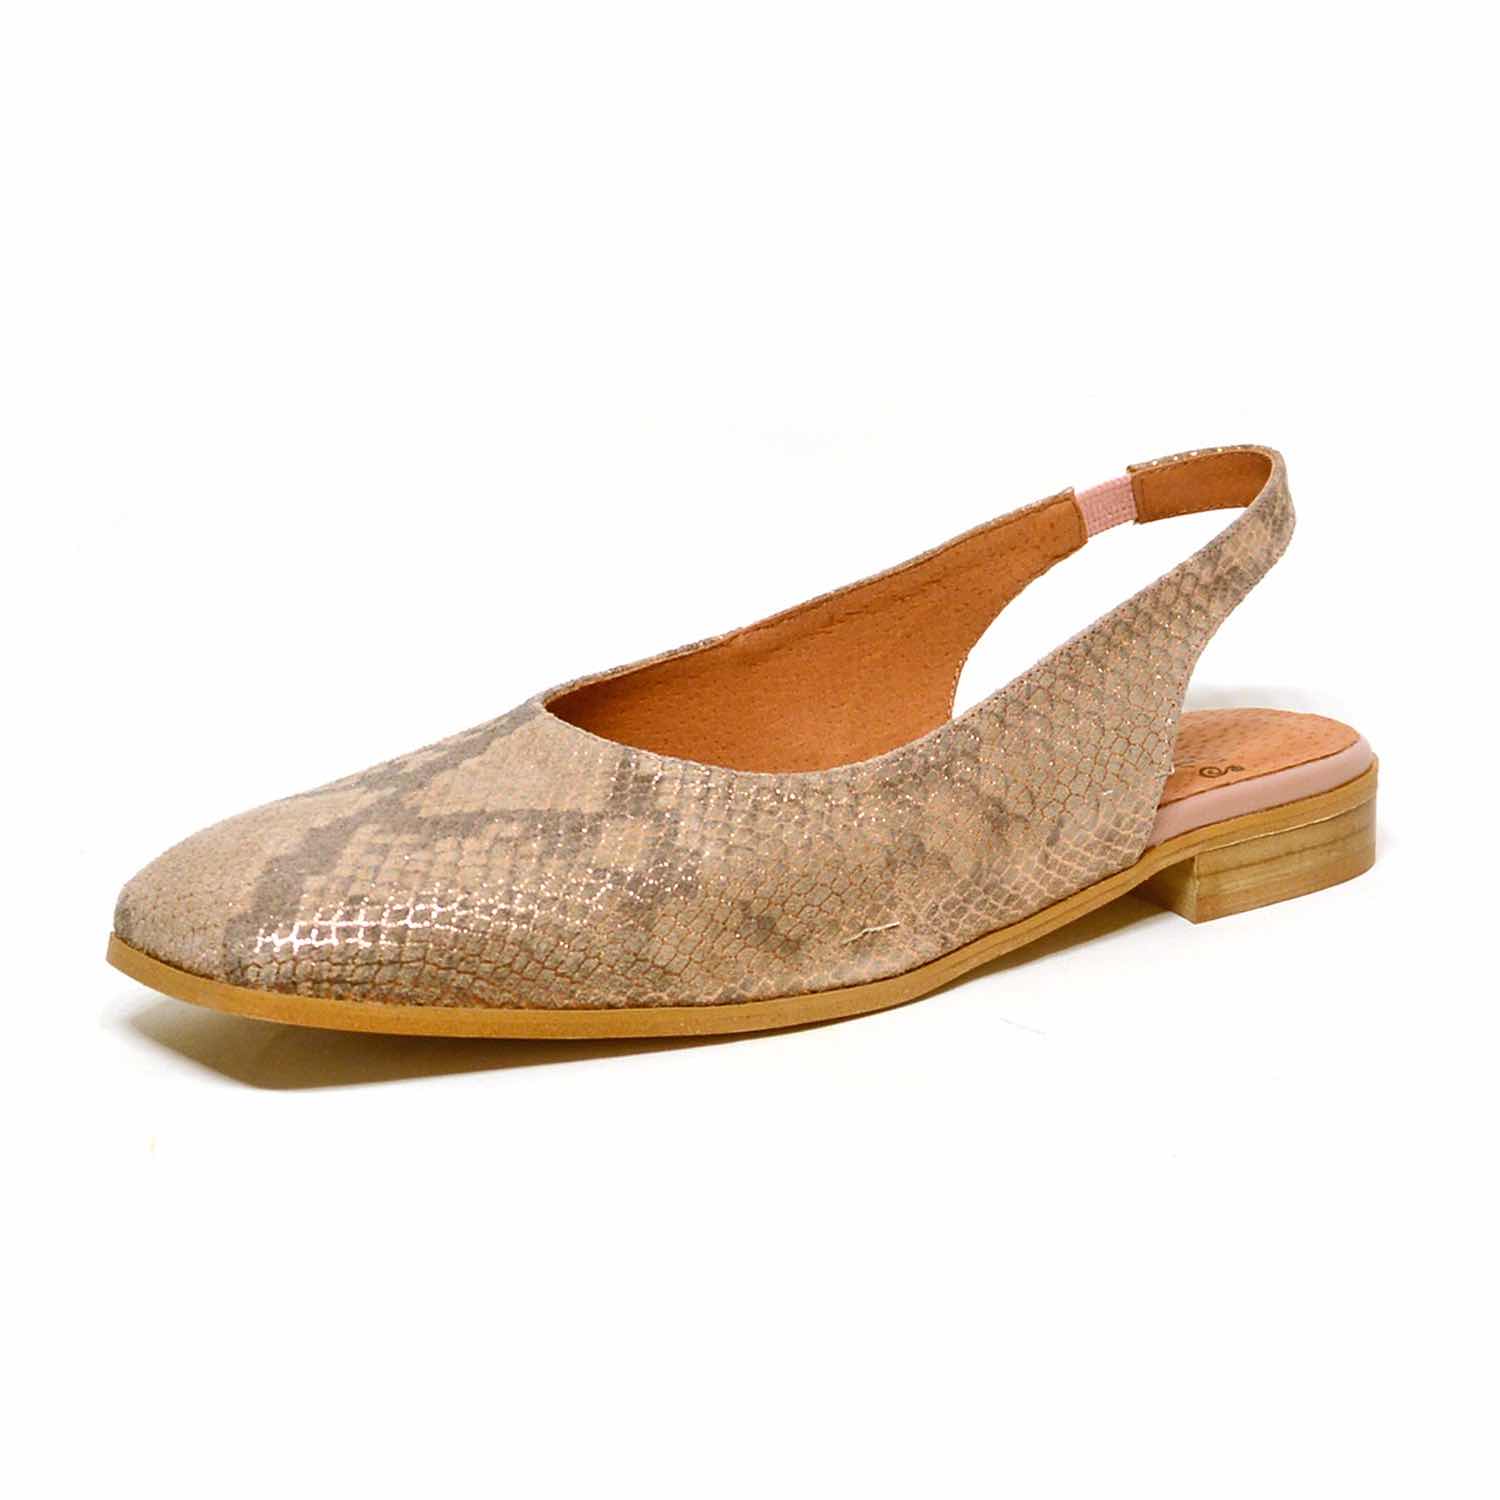 sandales femme grande taille du 40 au 48, velours multicolore, talon de 0,5 à 2 cm, mode habillee plates sandales plates detente, chaussures pour l'été